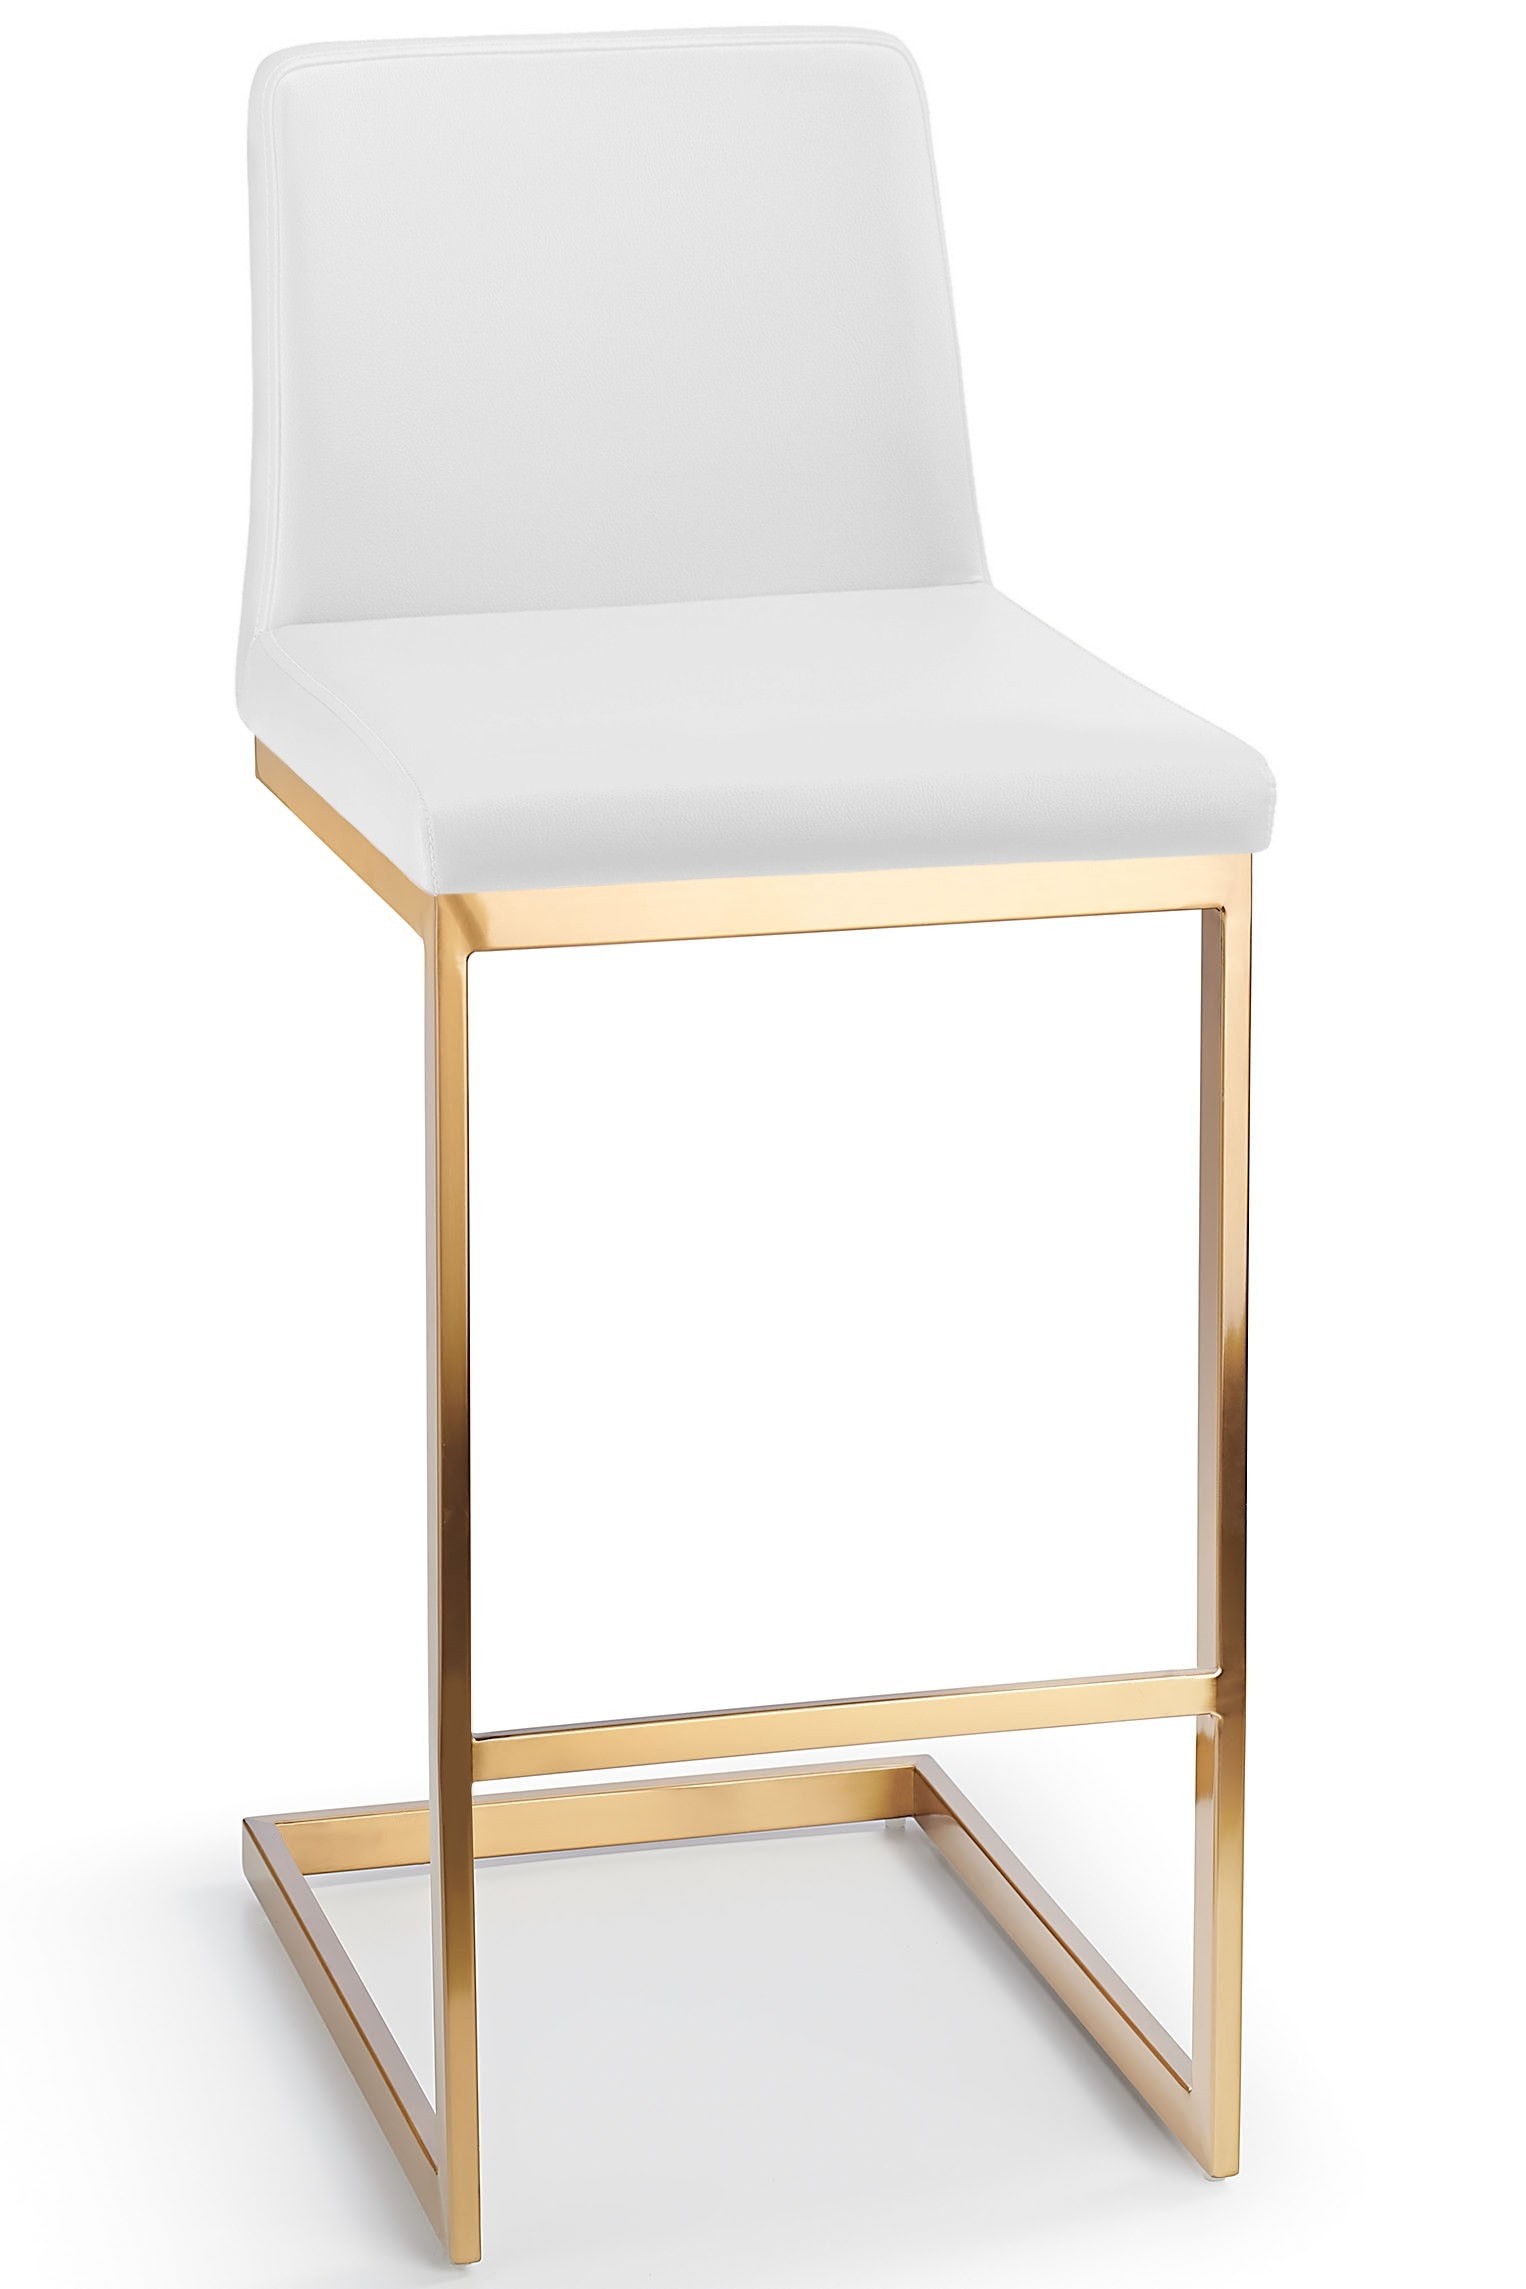 Ark gold bar stool white